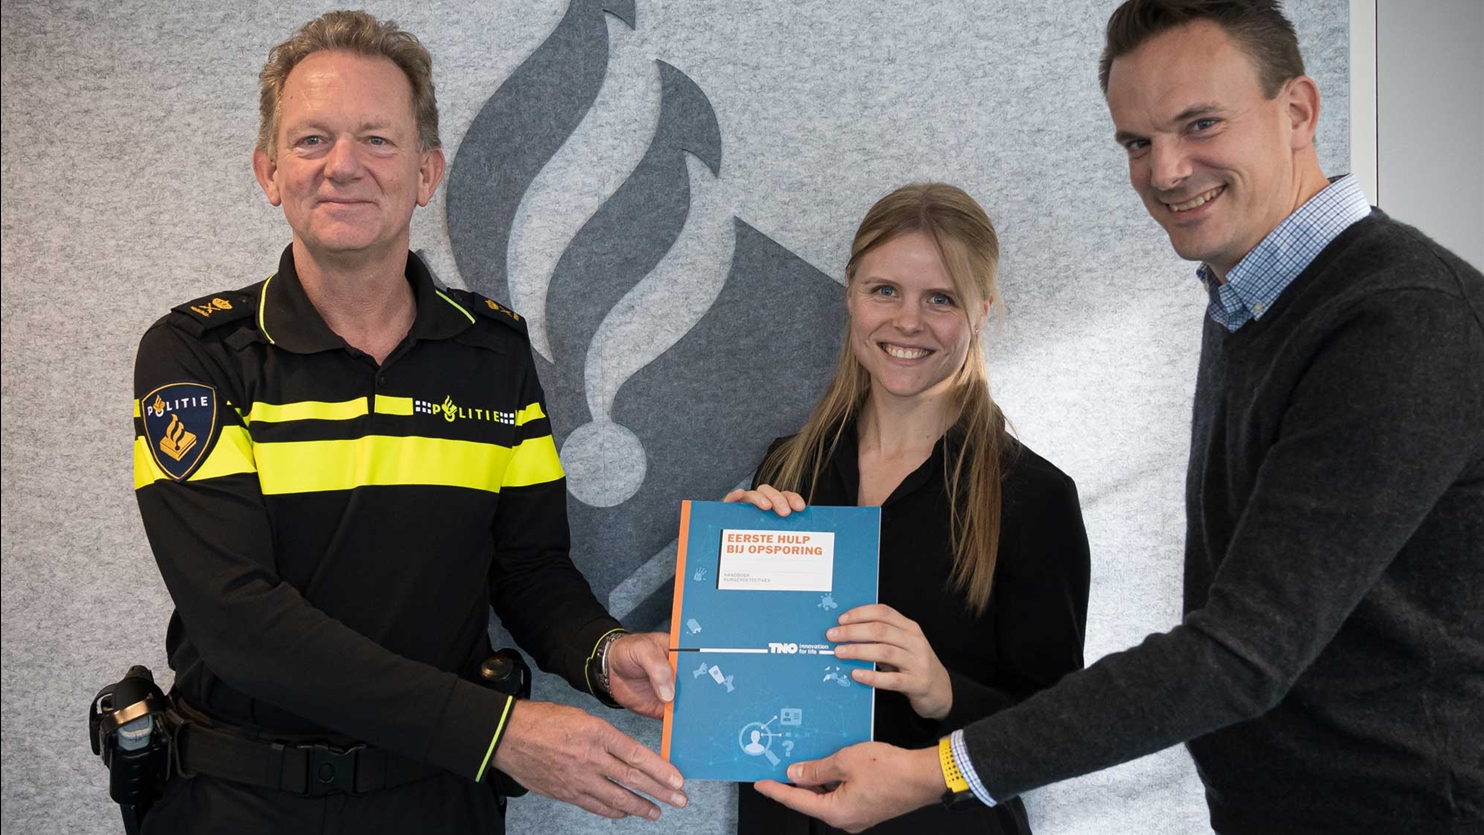 Overhandiging handboek voor hulp bij opsoring aan de Nederlandse politie